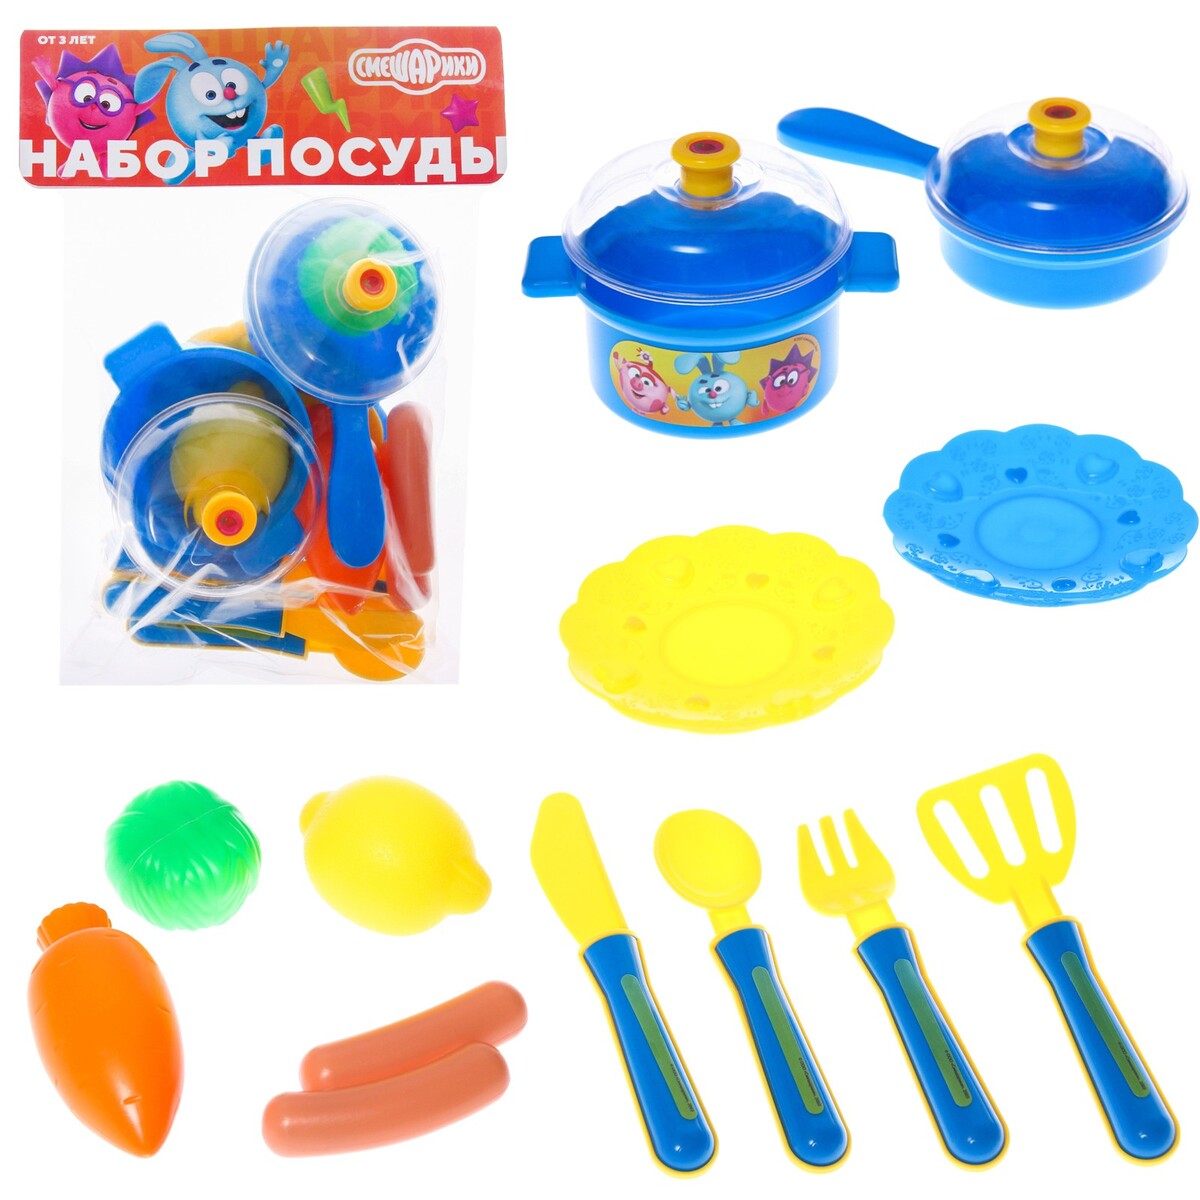 Набор посуды, смешарики, в пакете набор игровой ракетки 8×12 см и два мячика смешарики